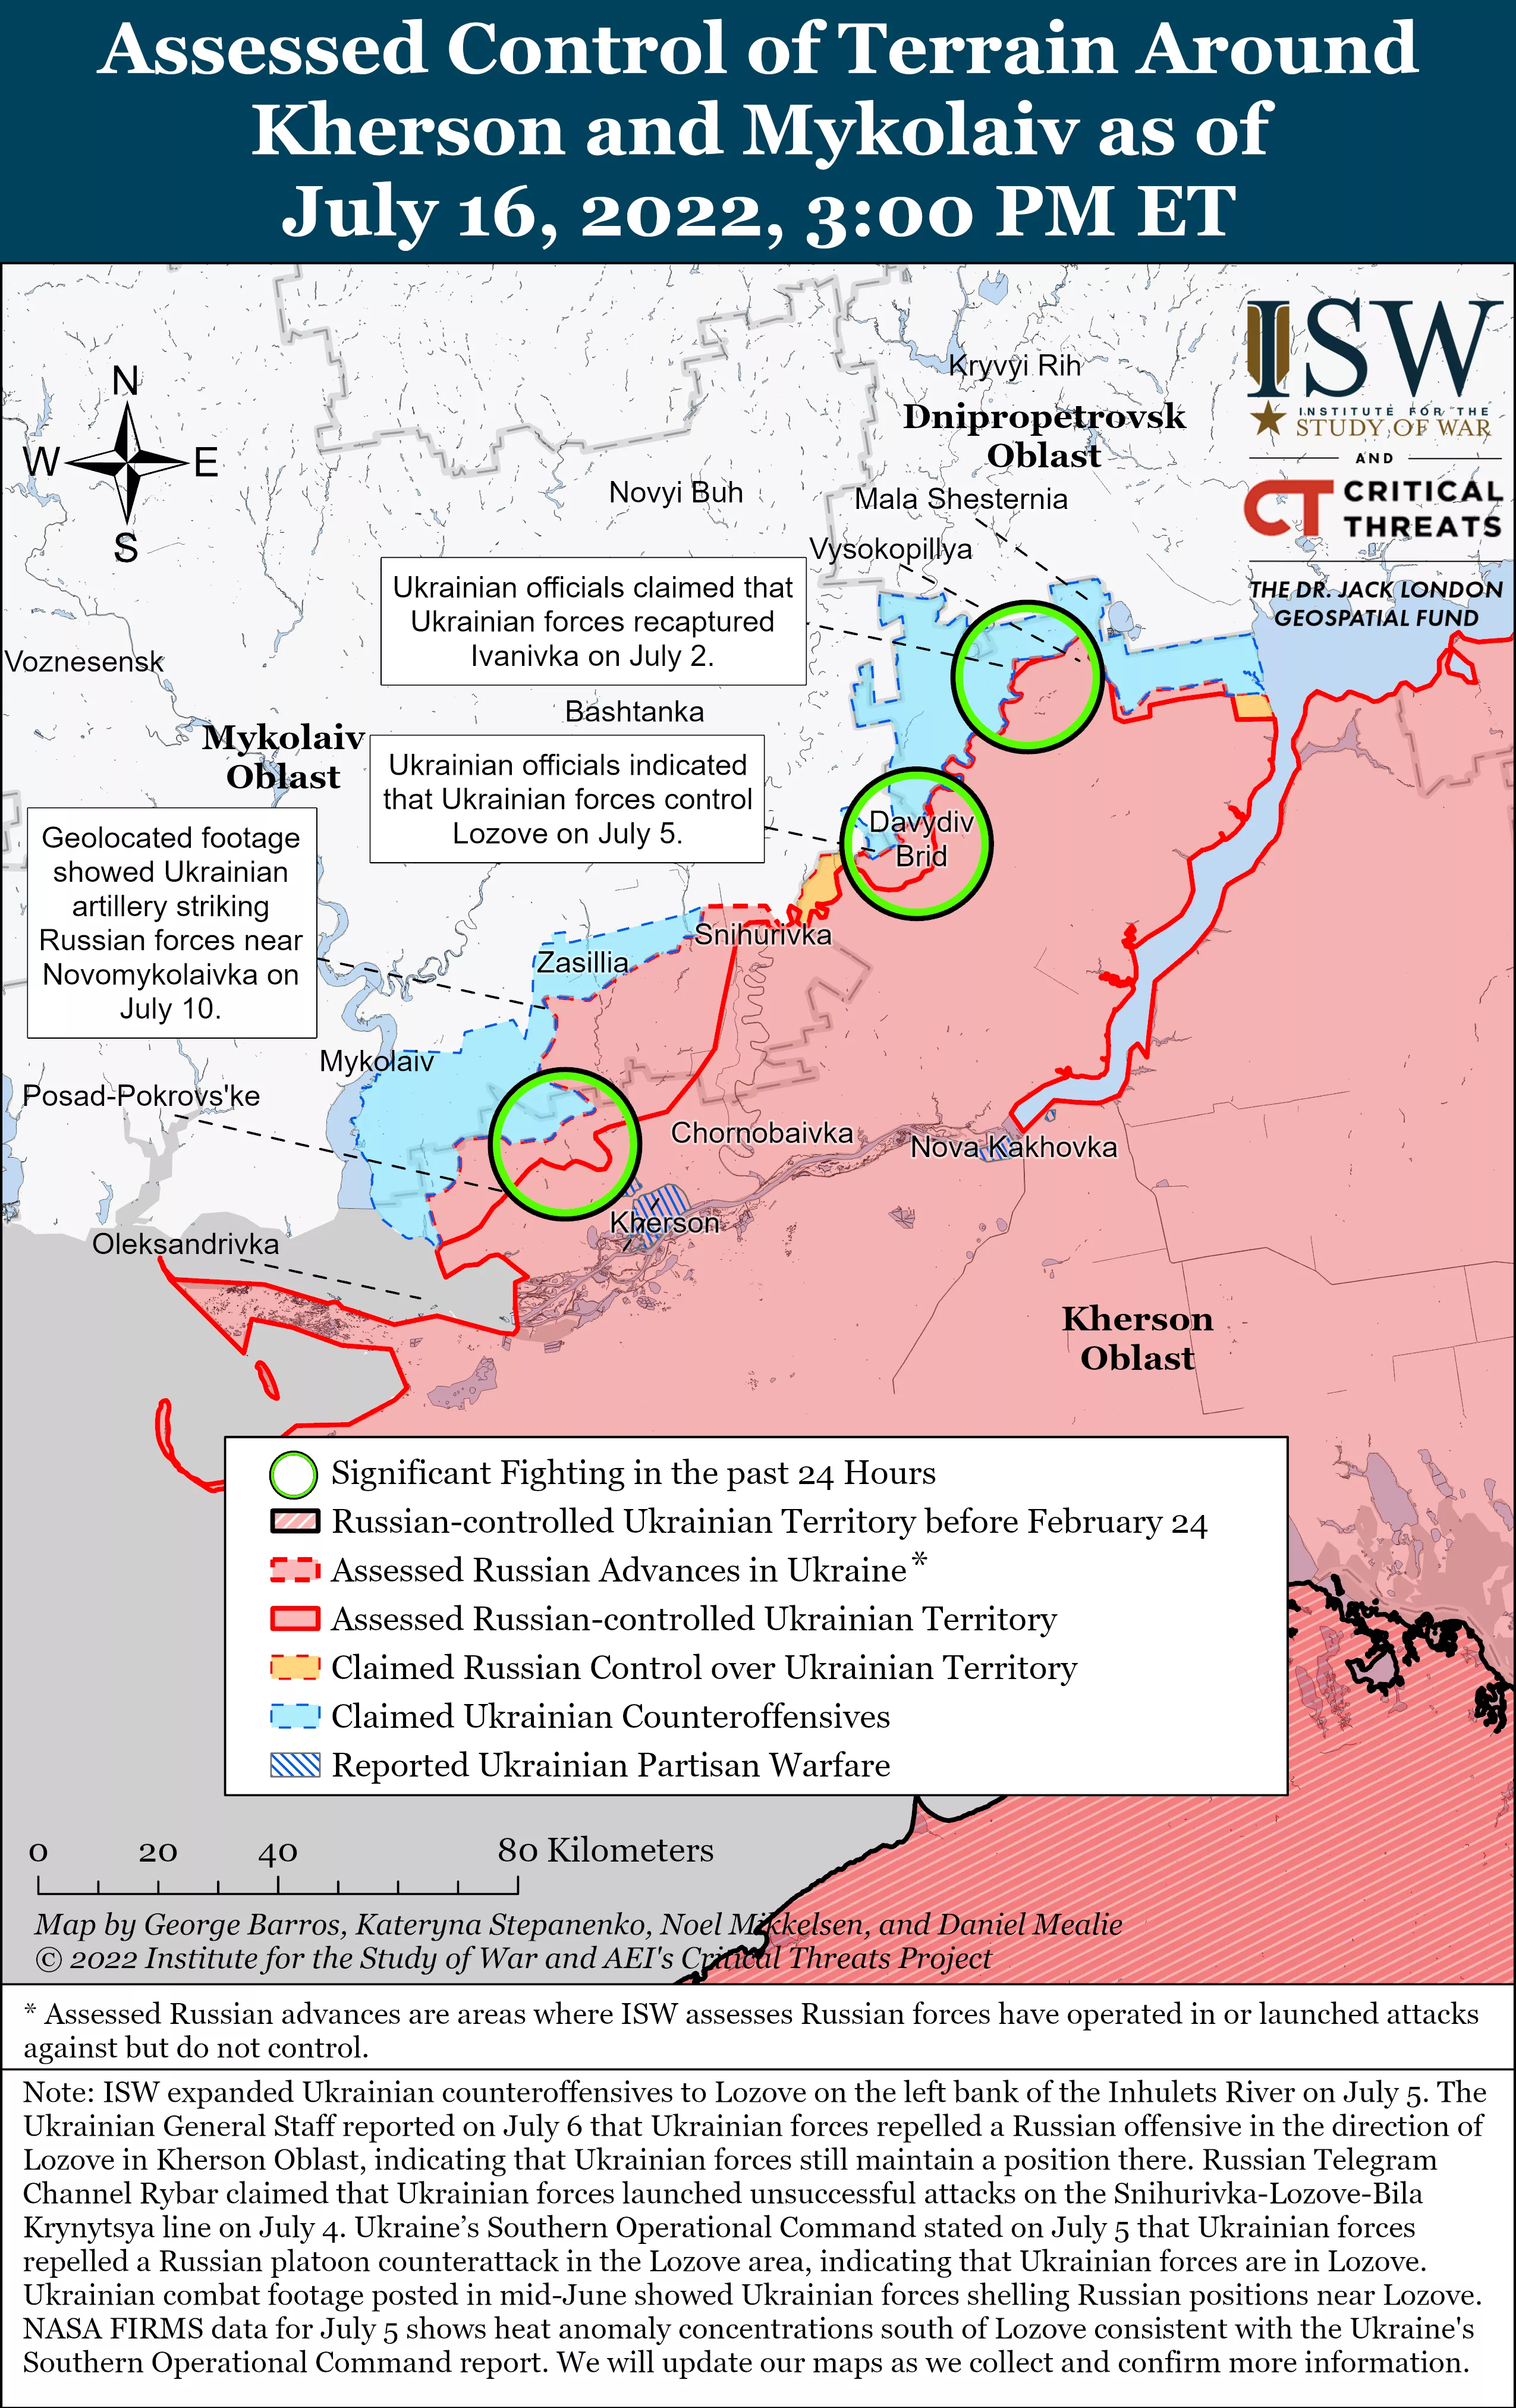 Війська РФ посилюють контроль на окупованих територіях: в чому причина